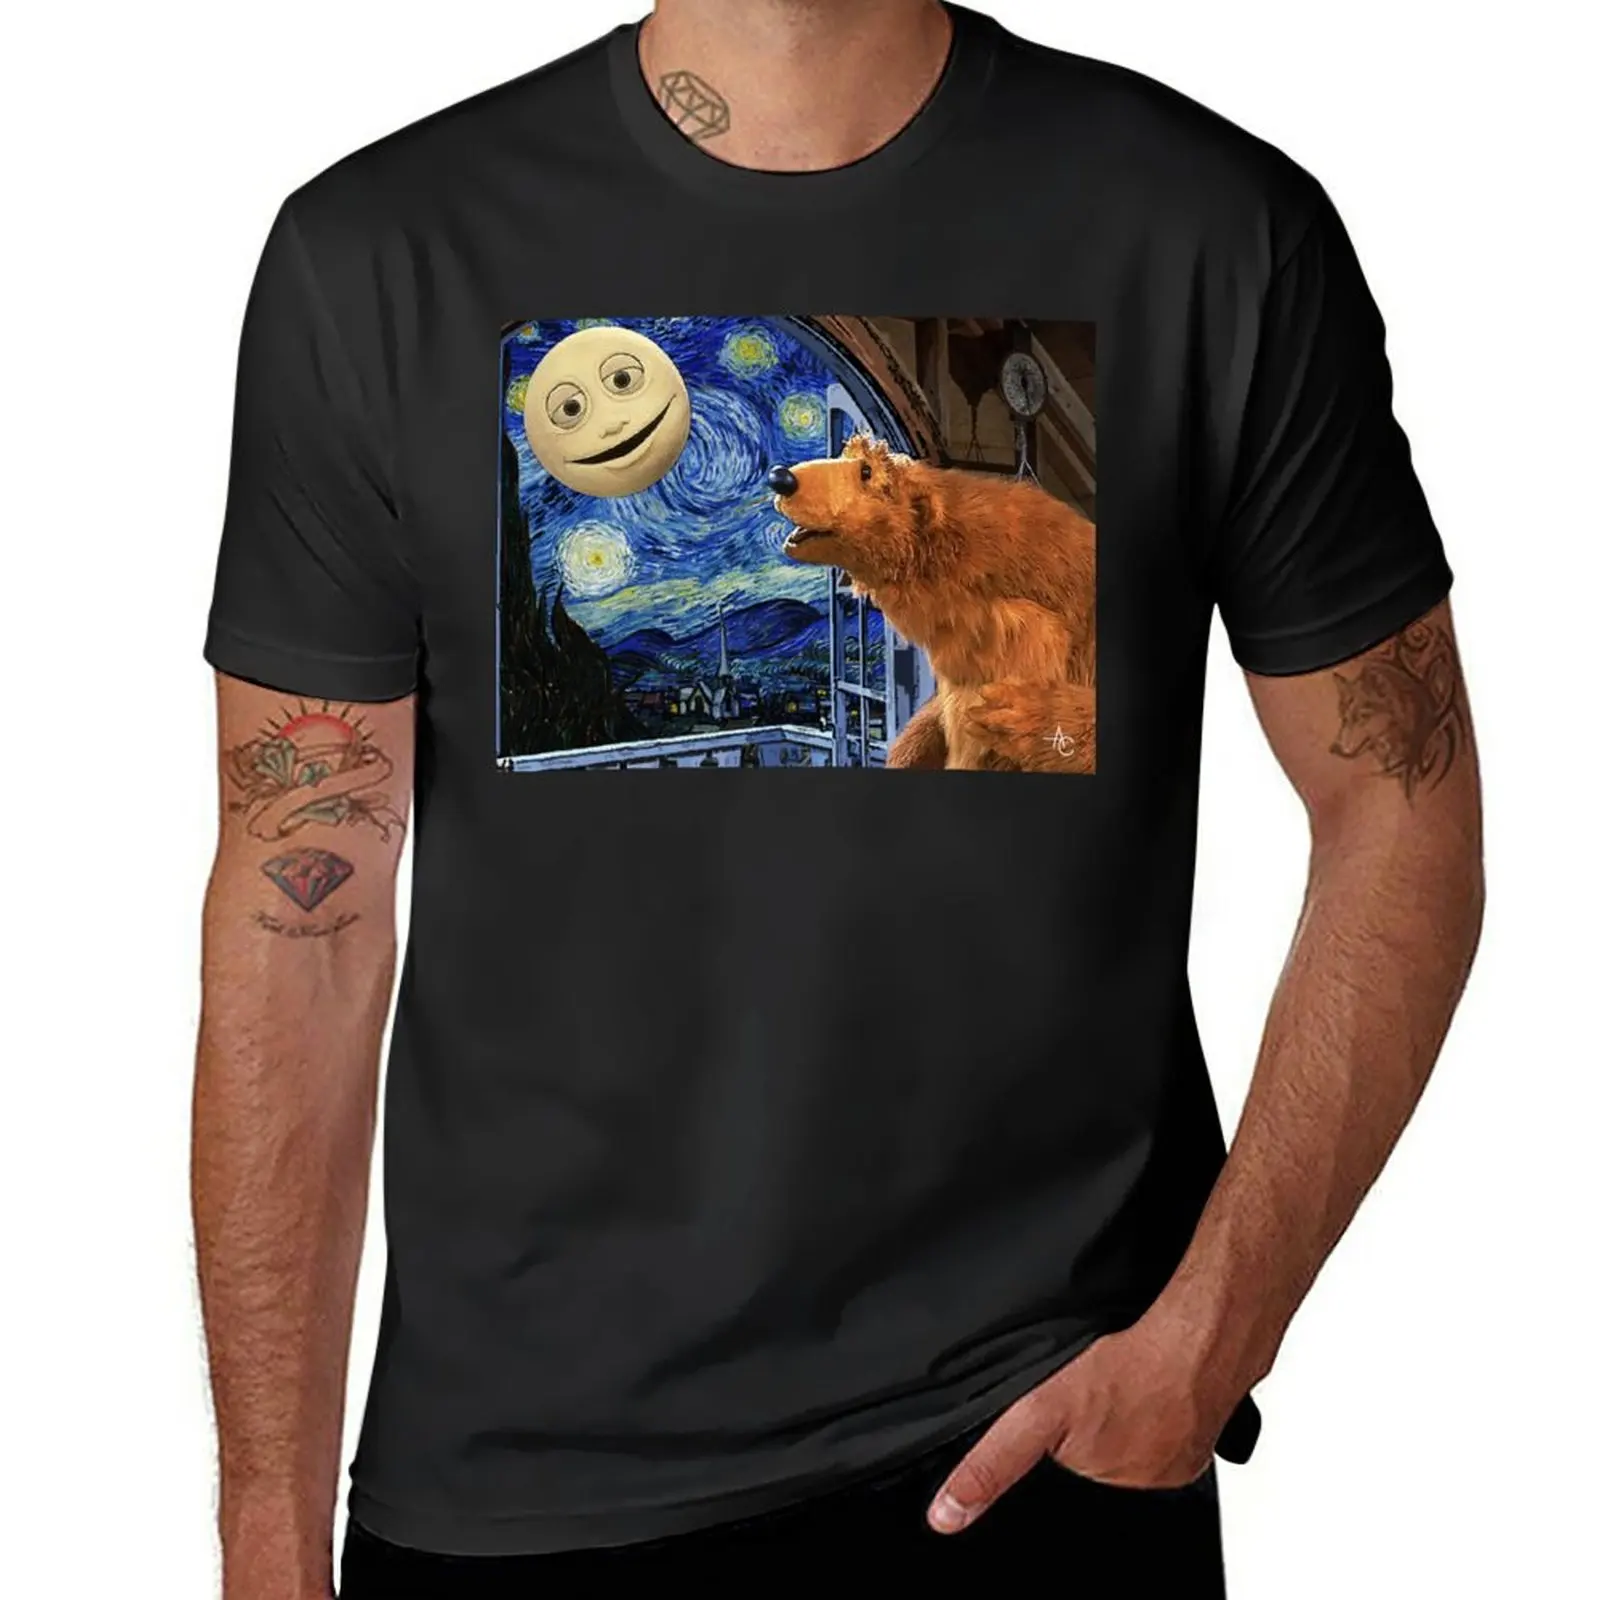 

Футболка с изображением медведя из большого синего дома со Звездной ночь, футболка с коротким рукавом, черная футболка, графическая футболка, мужские футболки с длинным рукавом, футболка s